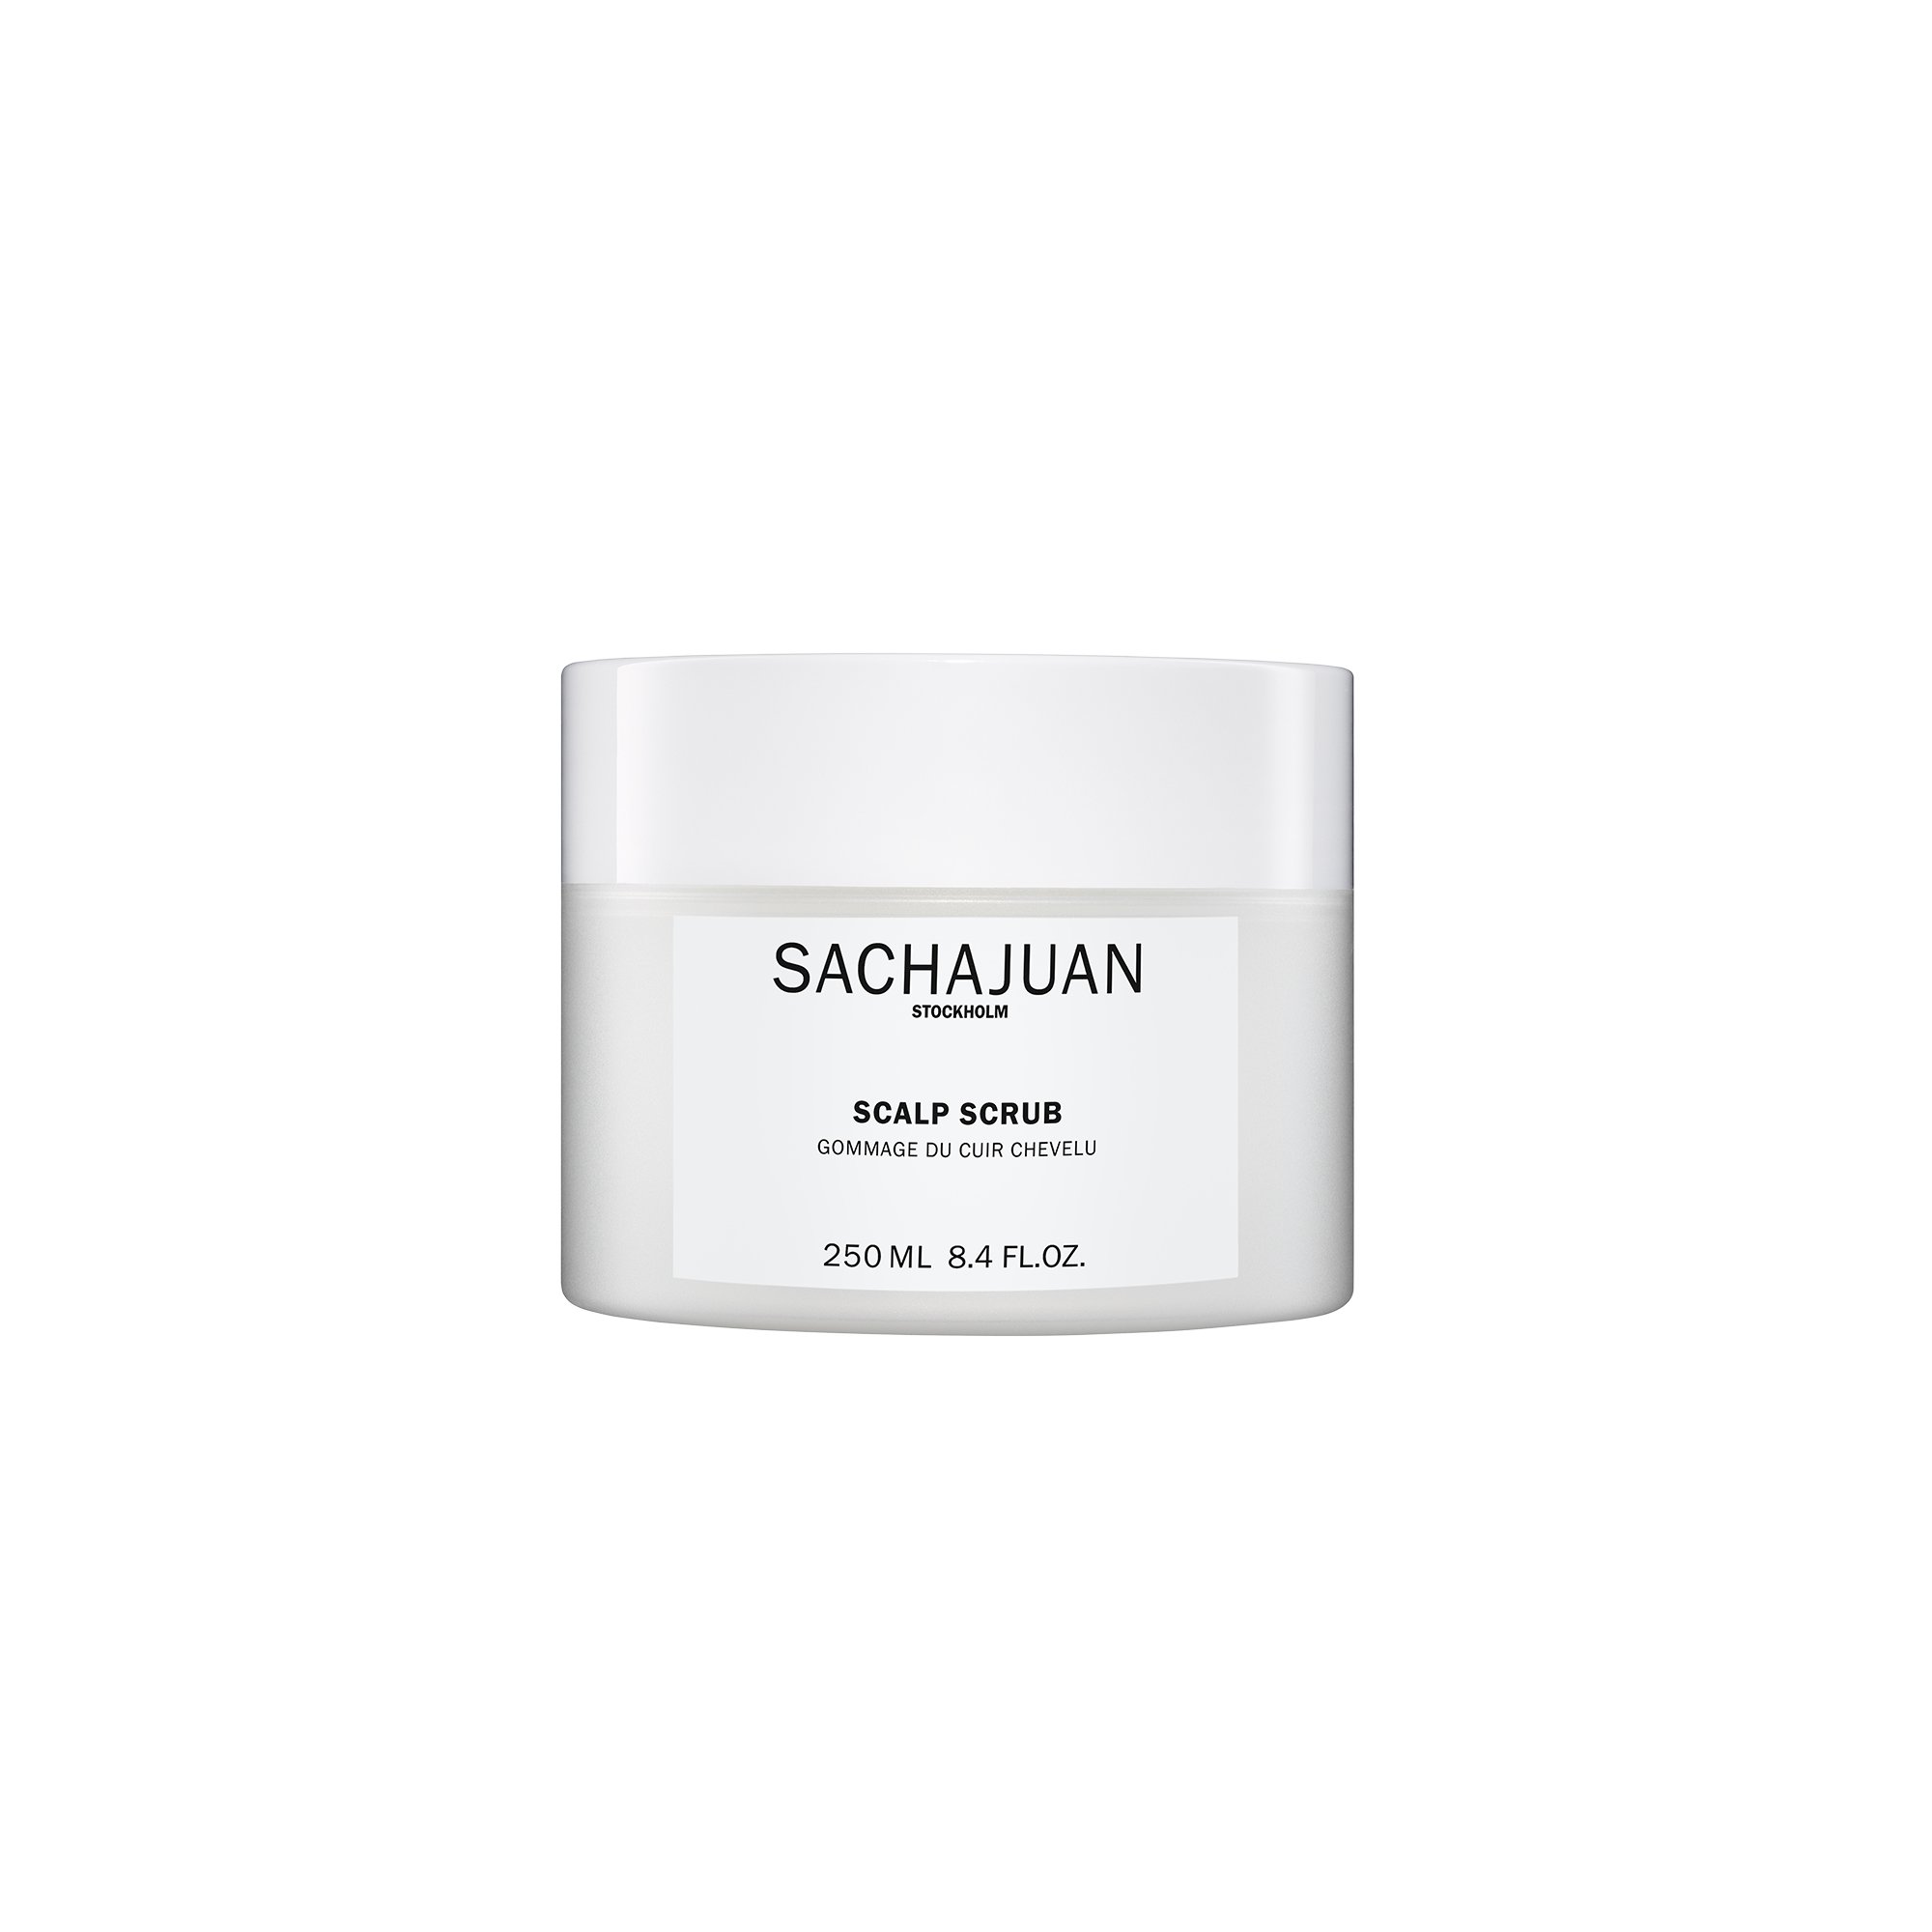 SACHAJUAN - Scalp Scrub - 250 ml